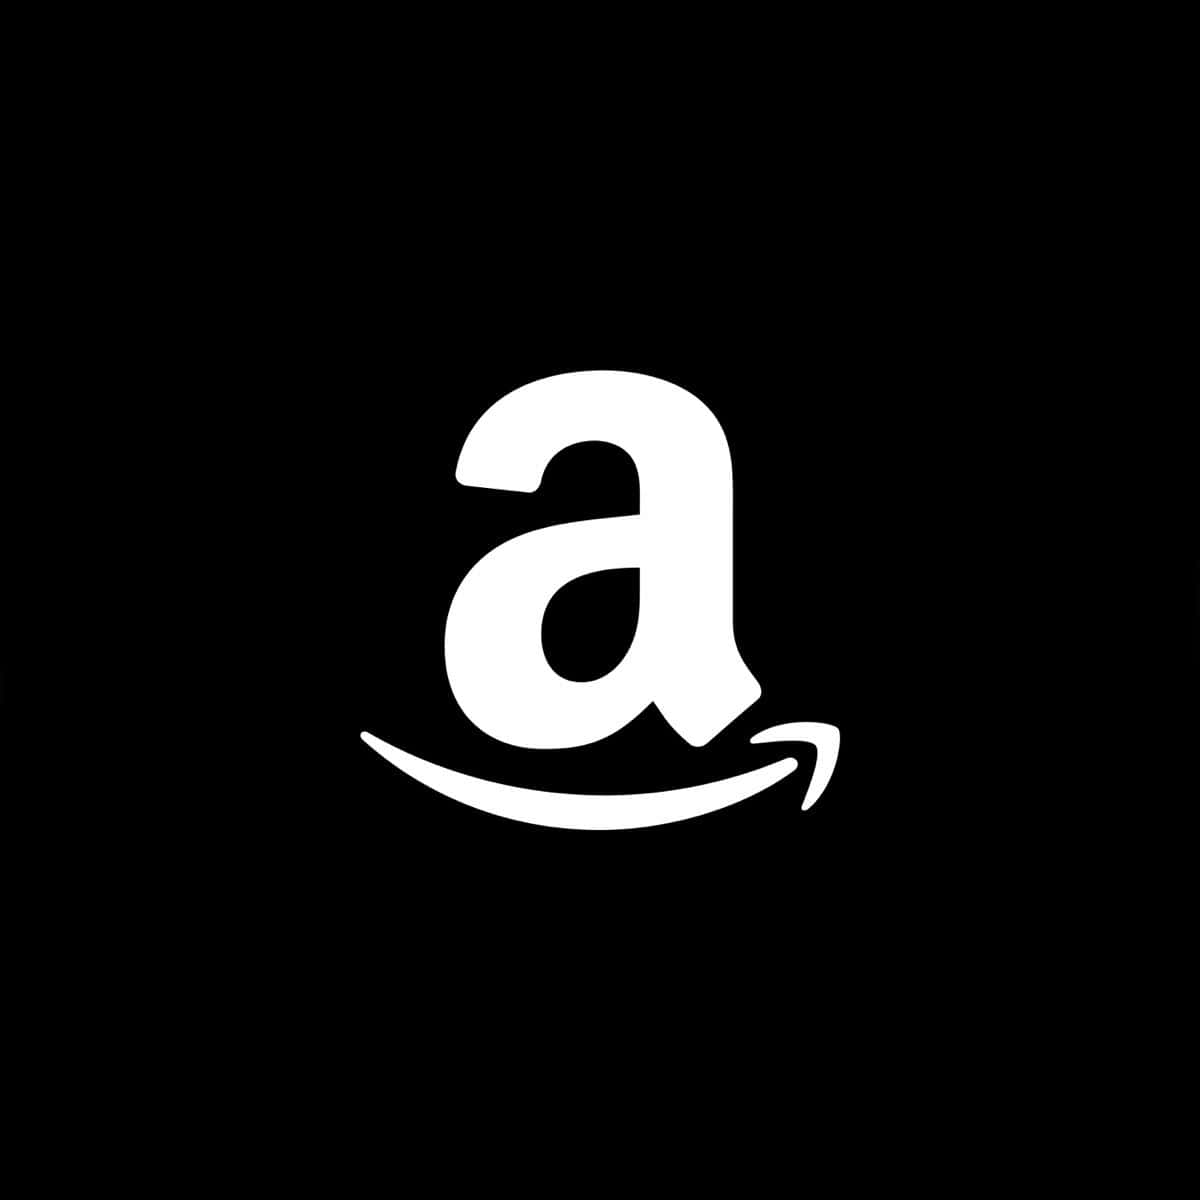 Amazonla Destinazione Unica Per Tutte Le Tue Esigenze Di Shopping.